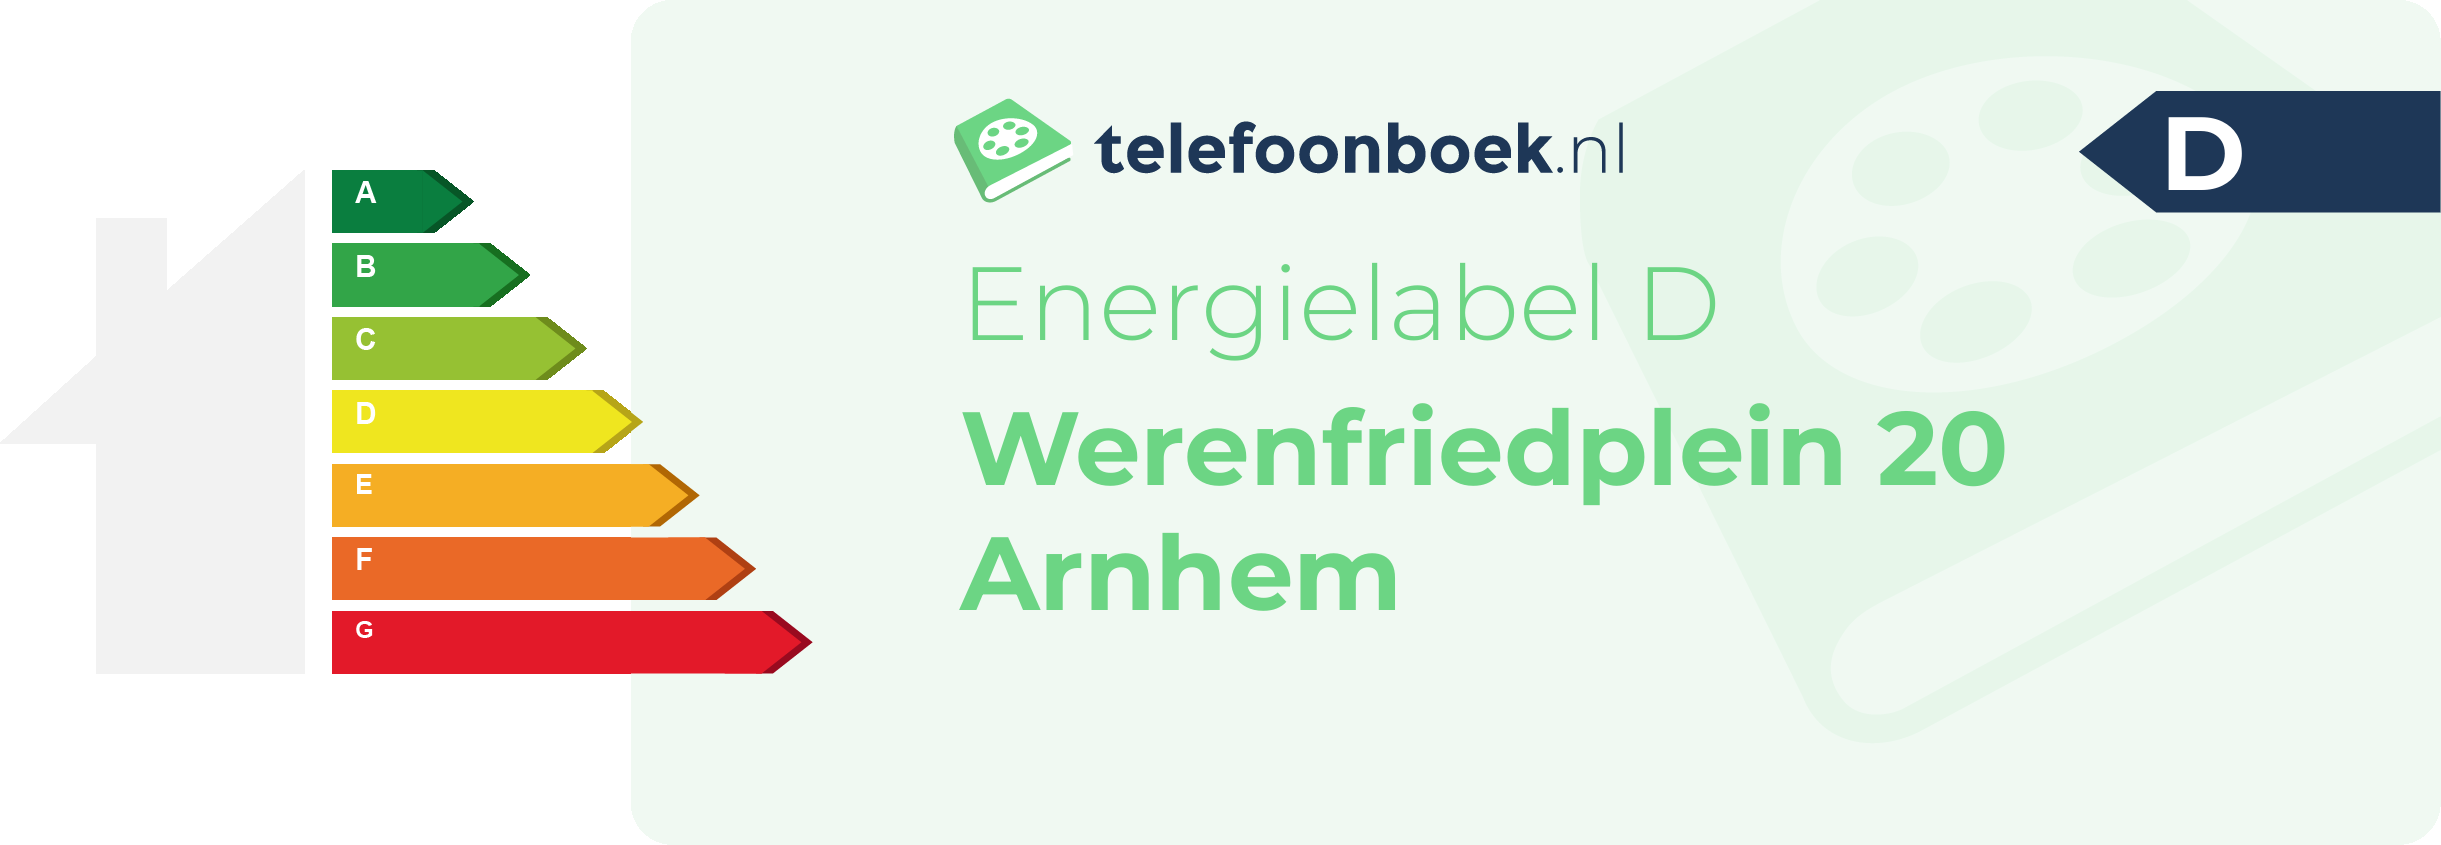 Energielabel Werenfriedplein 20 Arnhem